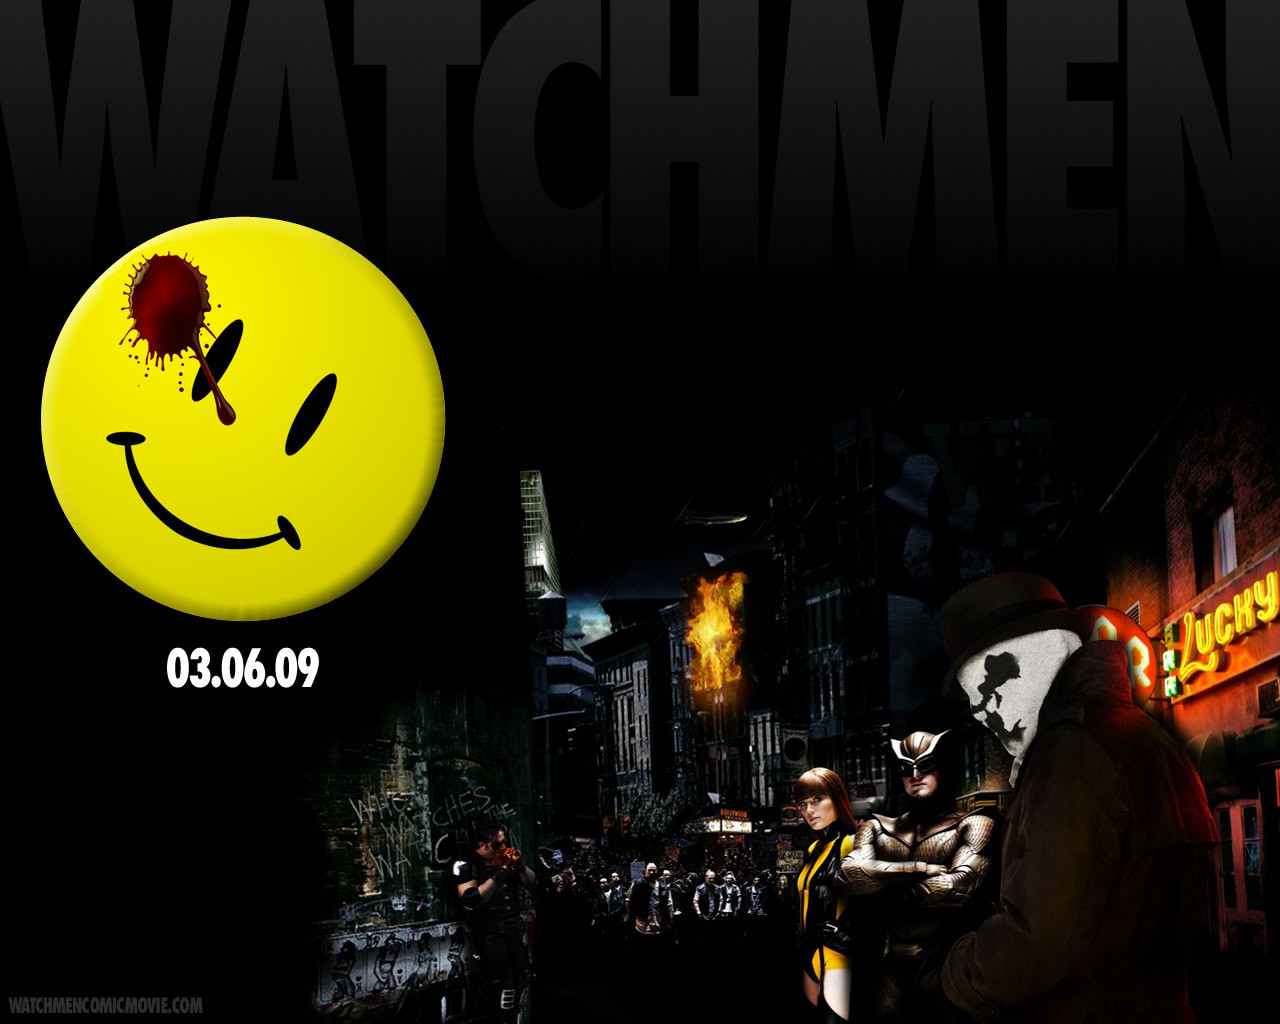 Watchmen Rorschach